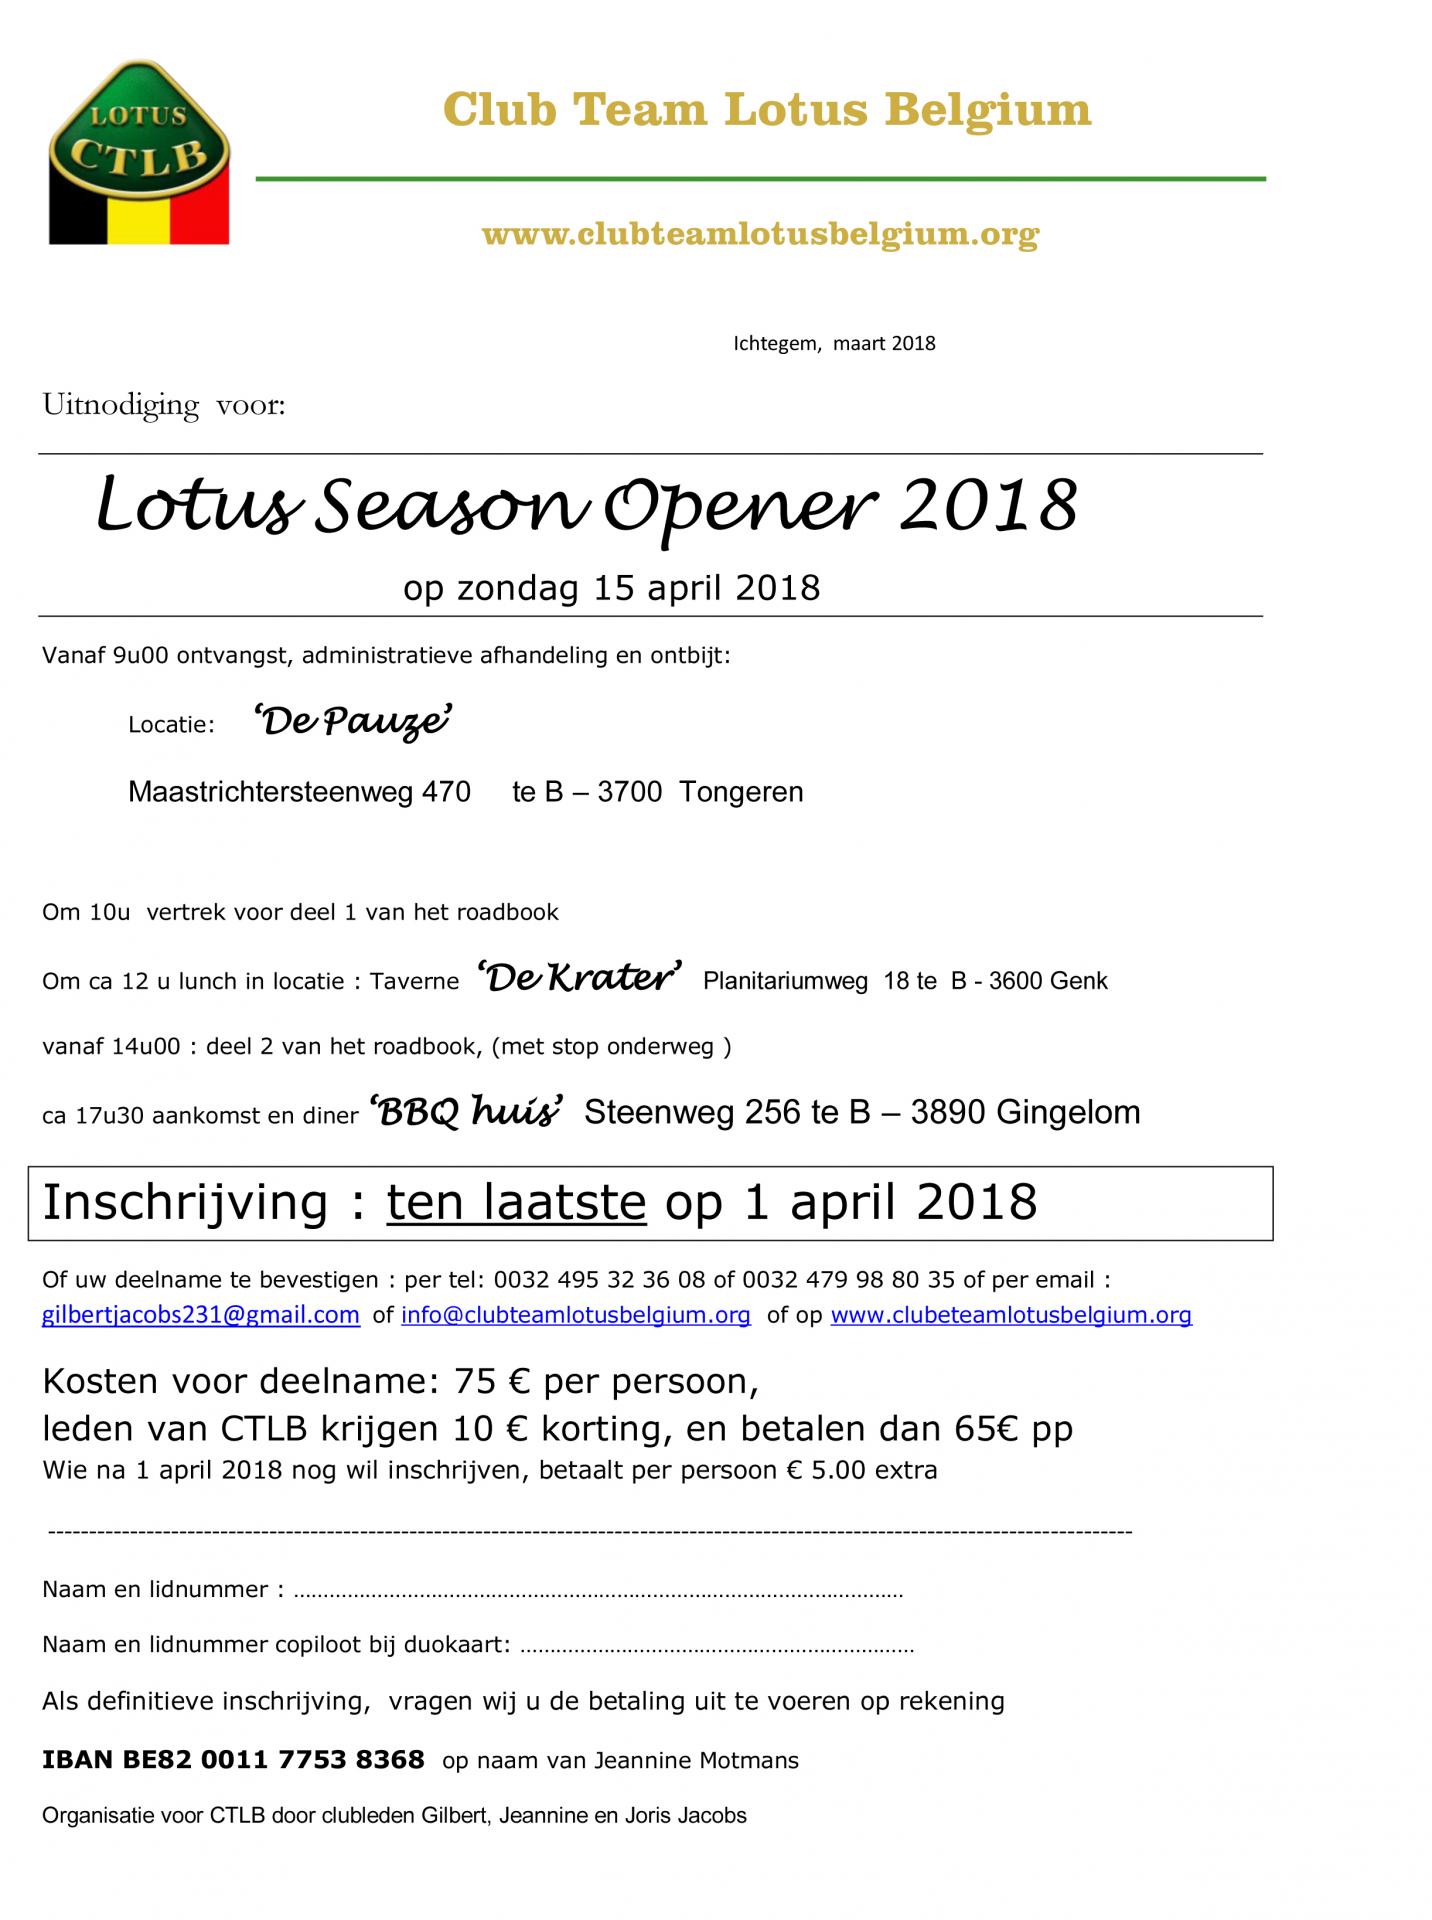 Uitnodiging lotus season opener